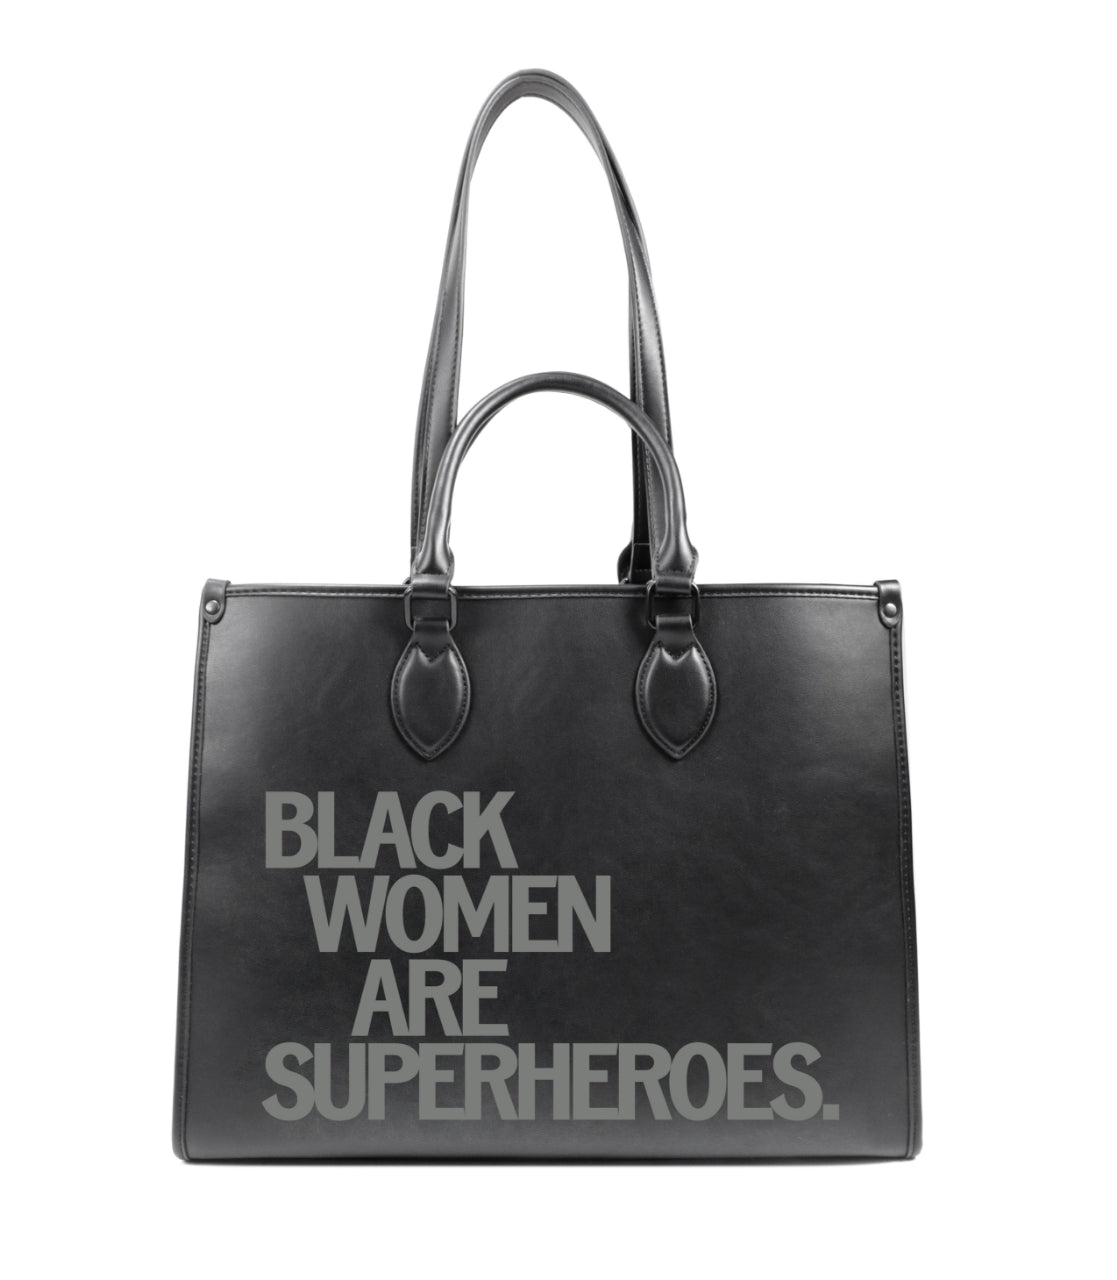 Black Women Are Superheroes Printed Tote